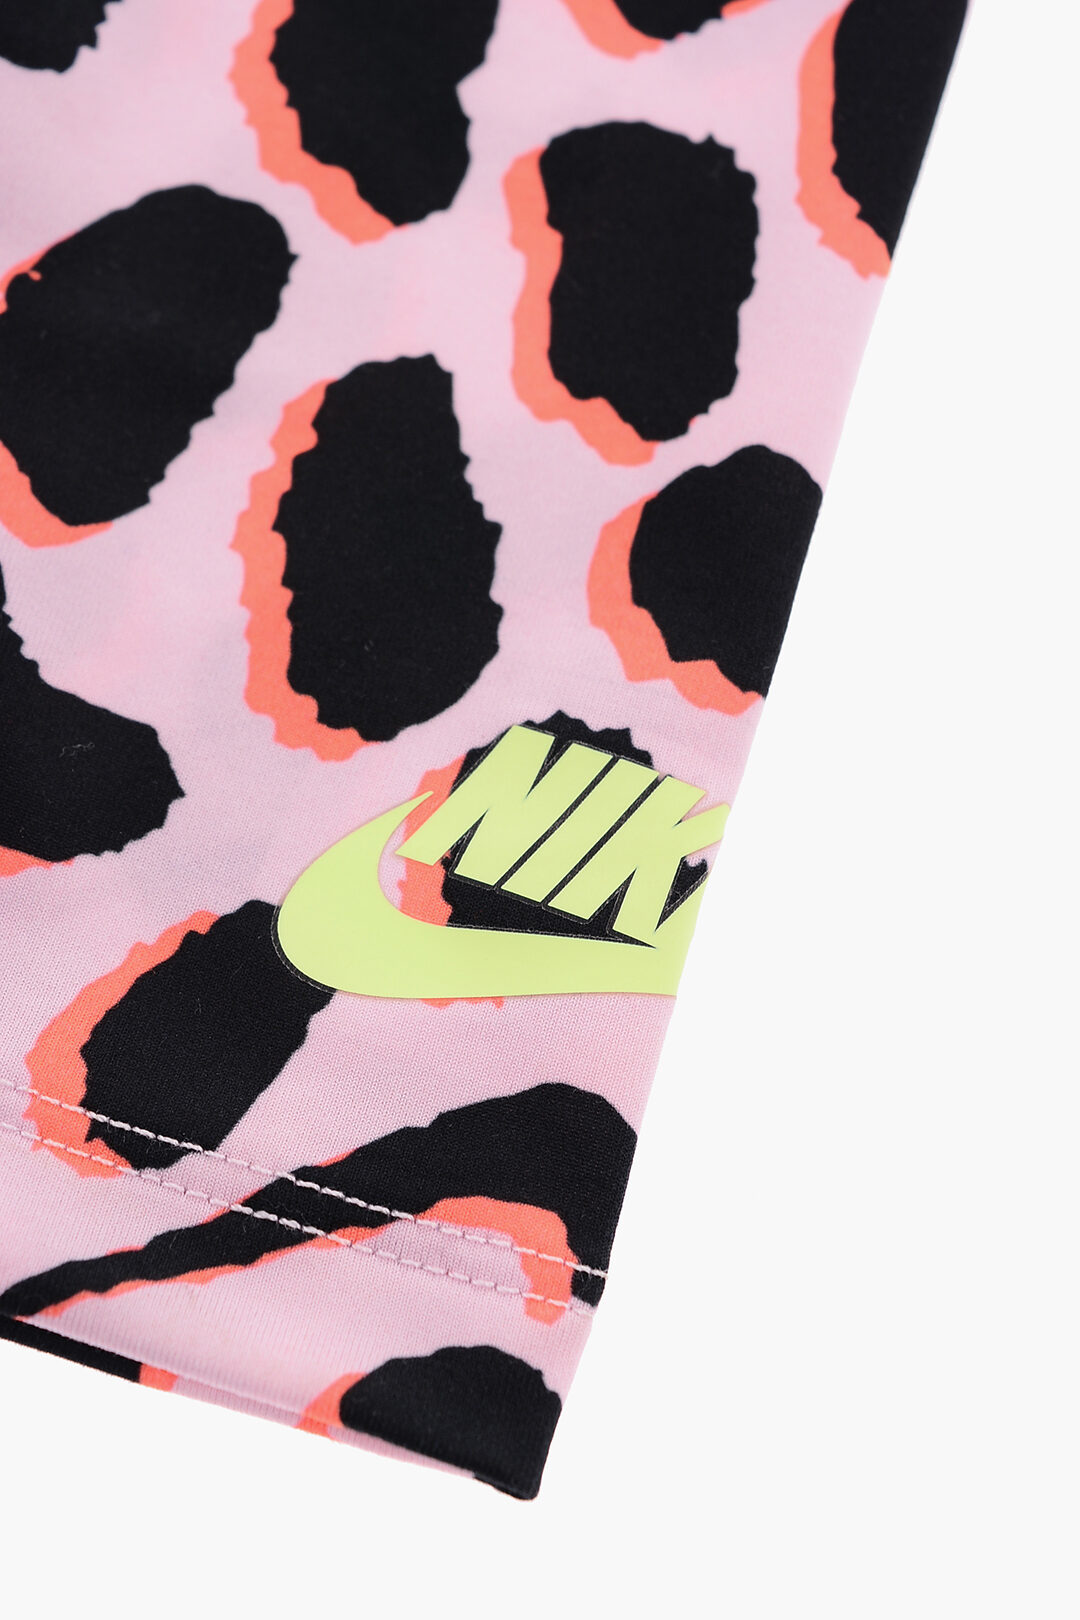 Nike KIDS T-shirt and Drawstring Leggings Pants Set girls - Glamood Outlet